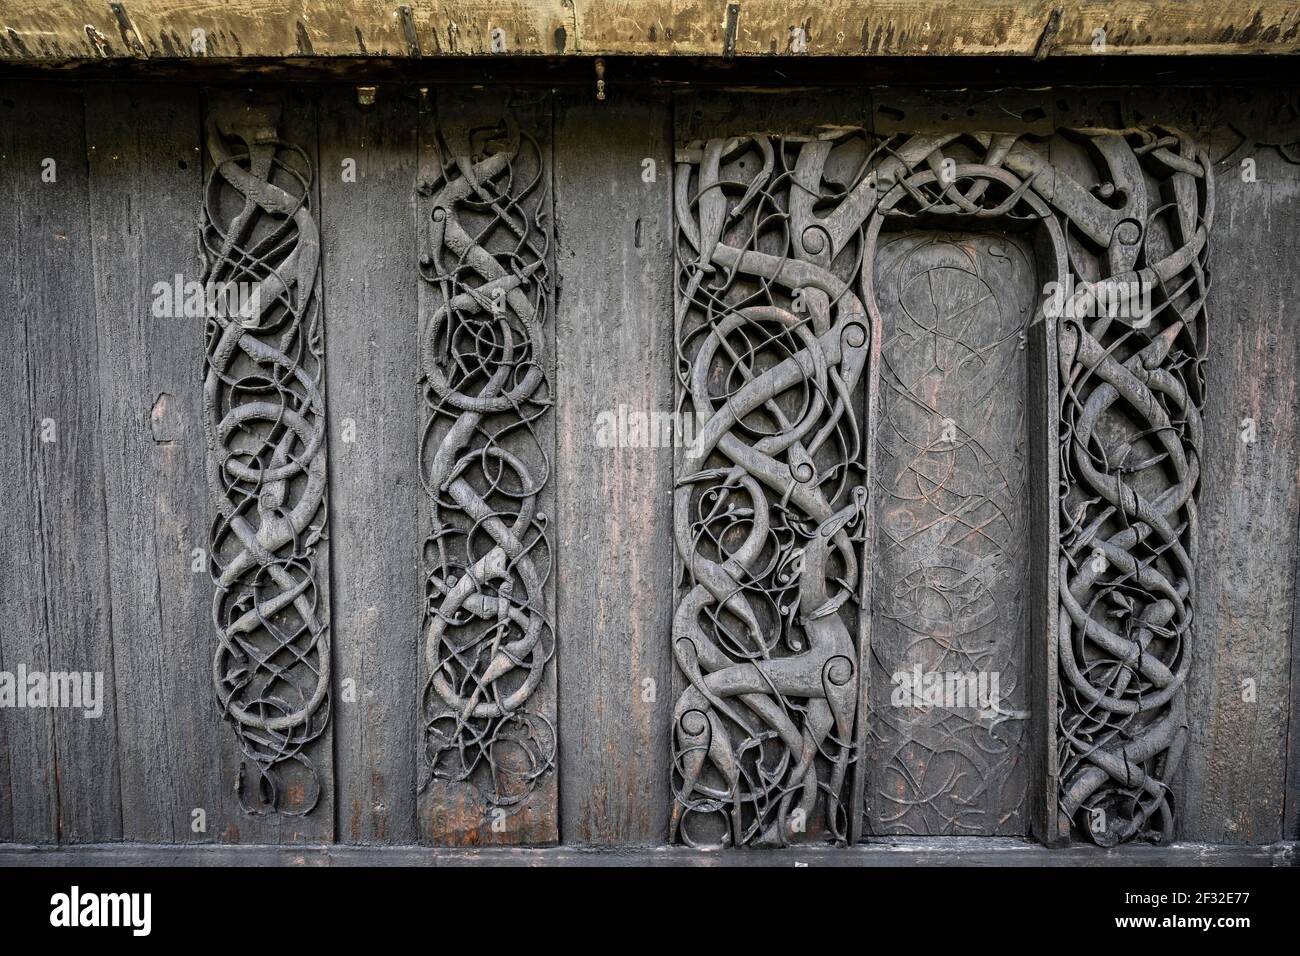 Portail nord sculpté avec art, art celtique avec traditions des Vikings, église Urnes Stave, église romane de CA. 1130, Vestland, Norvège Banque D'Images